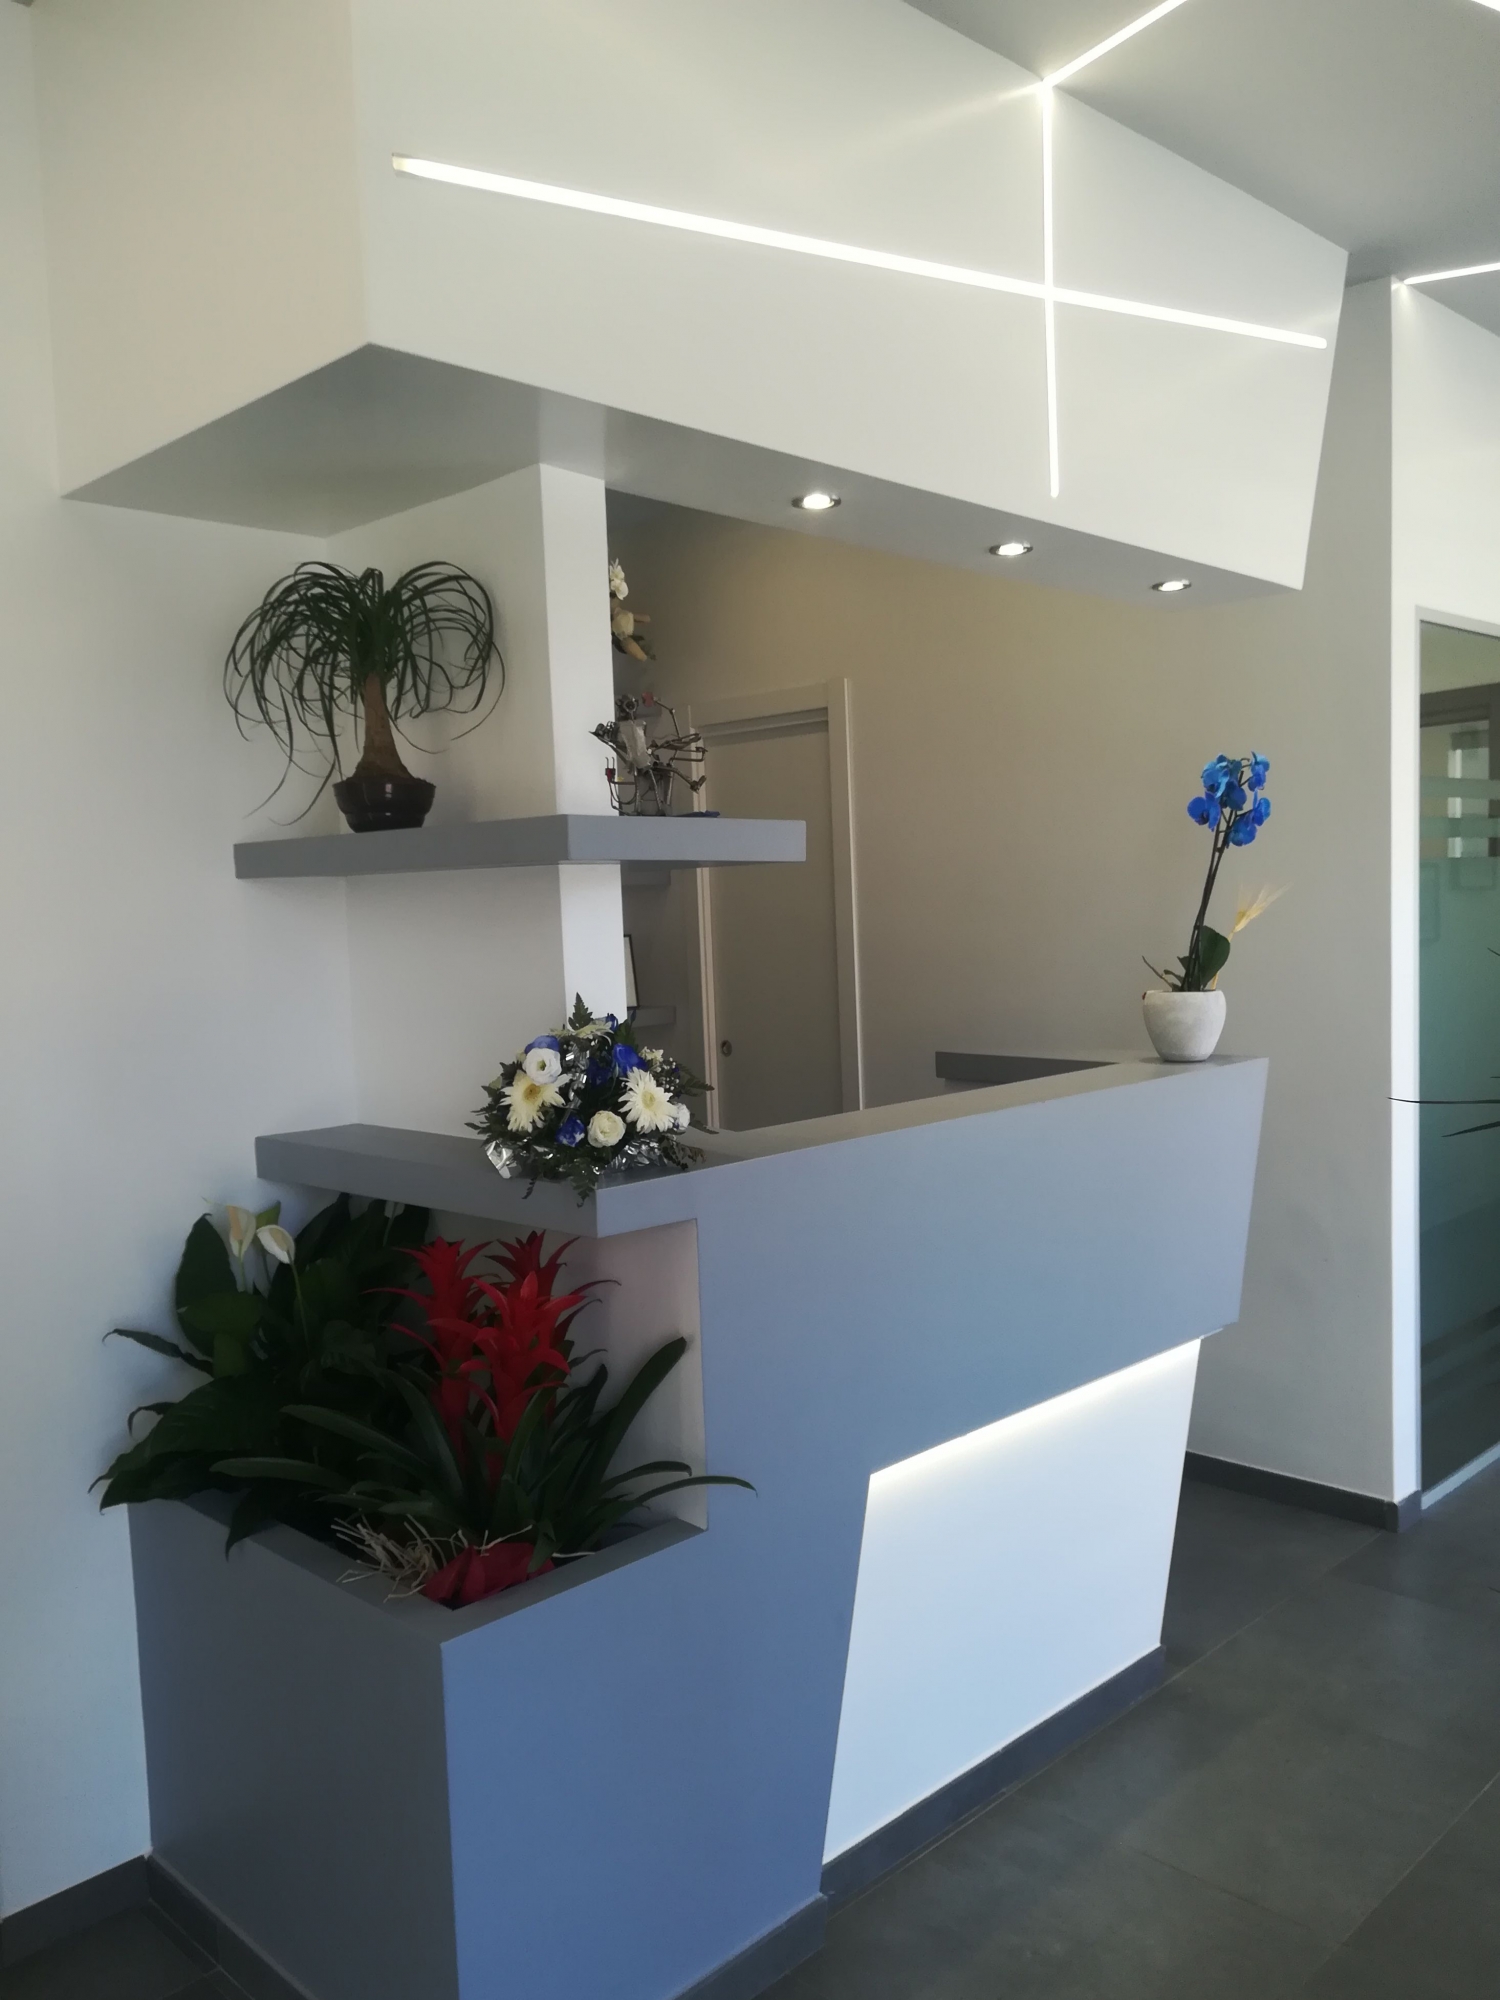 Bancone reception - studio odontoiatrico progetto - Architetto - Led - soffitto in cartongesso